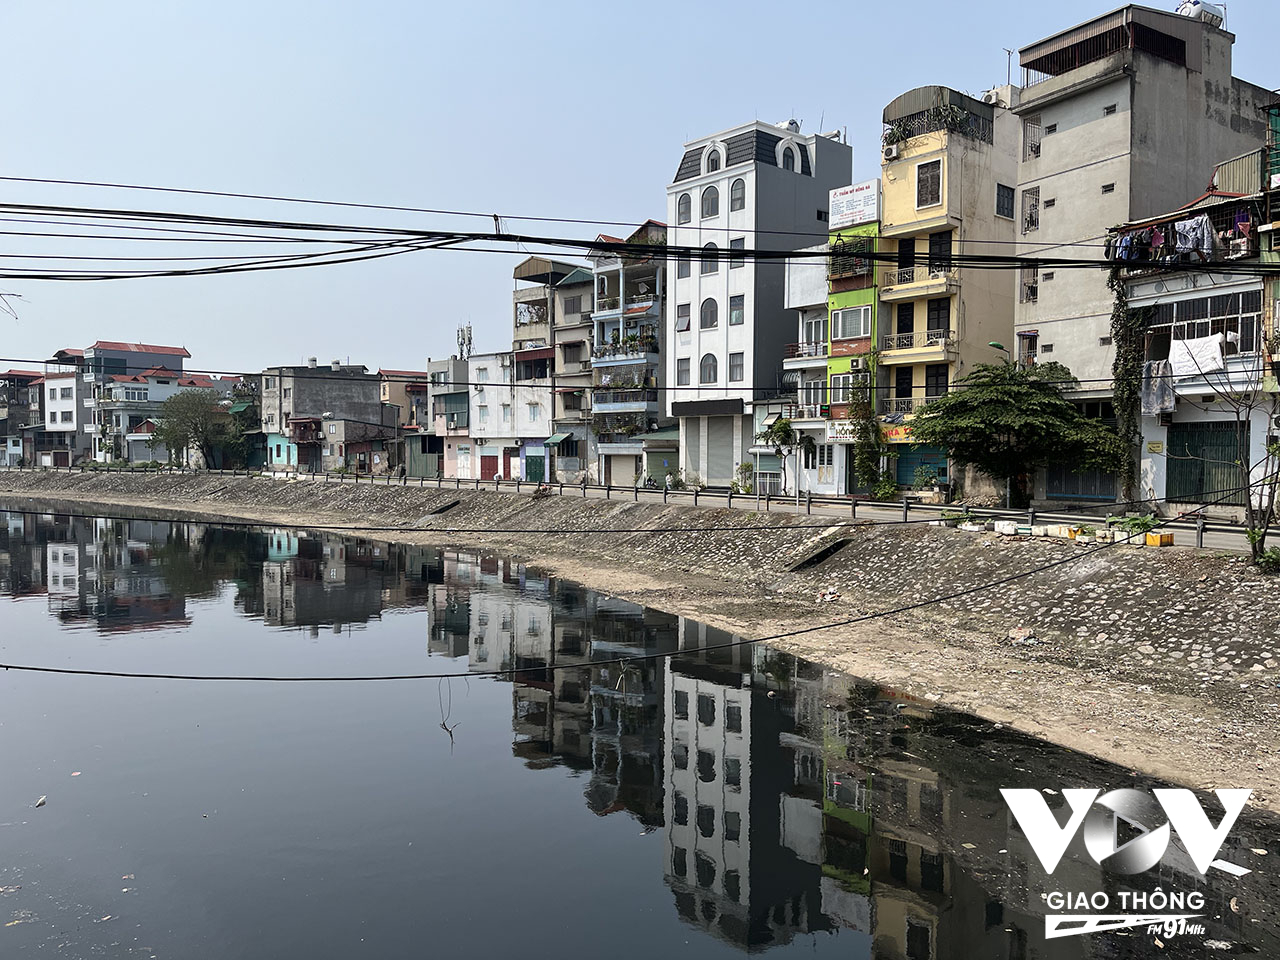 Một đoạn sông Tô Lịch chảy qua địa bàn huyện Thanh Trì với làn nước đen đặc và bốc mùi hôi thối nồng nặc, từ xa đã cảm nhận được